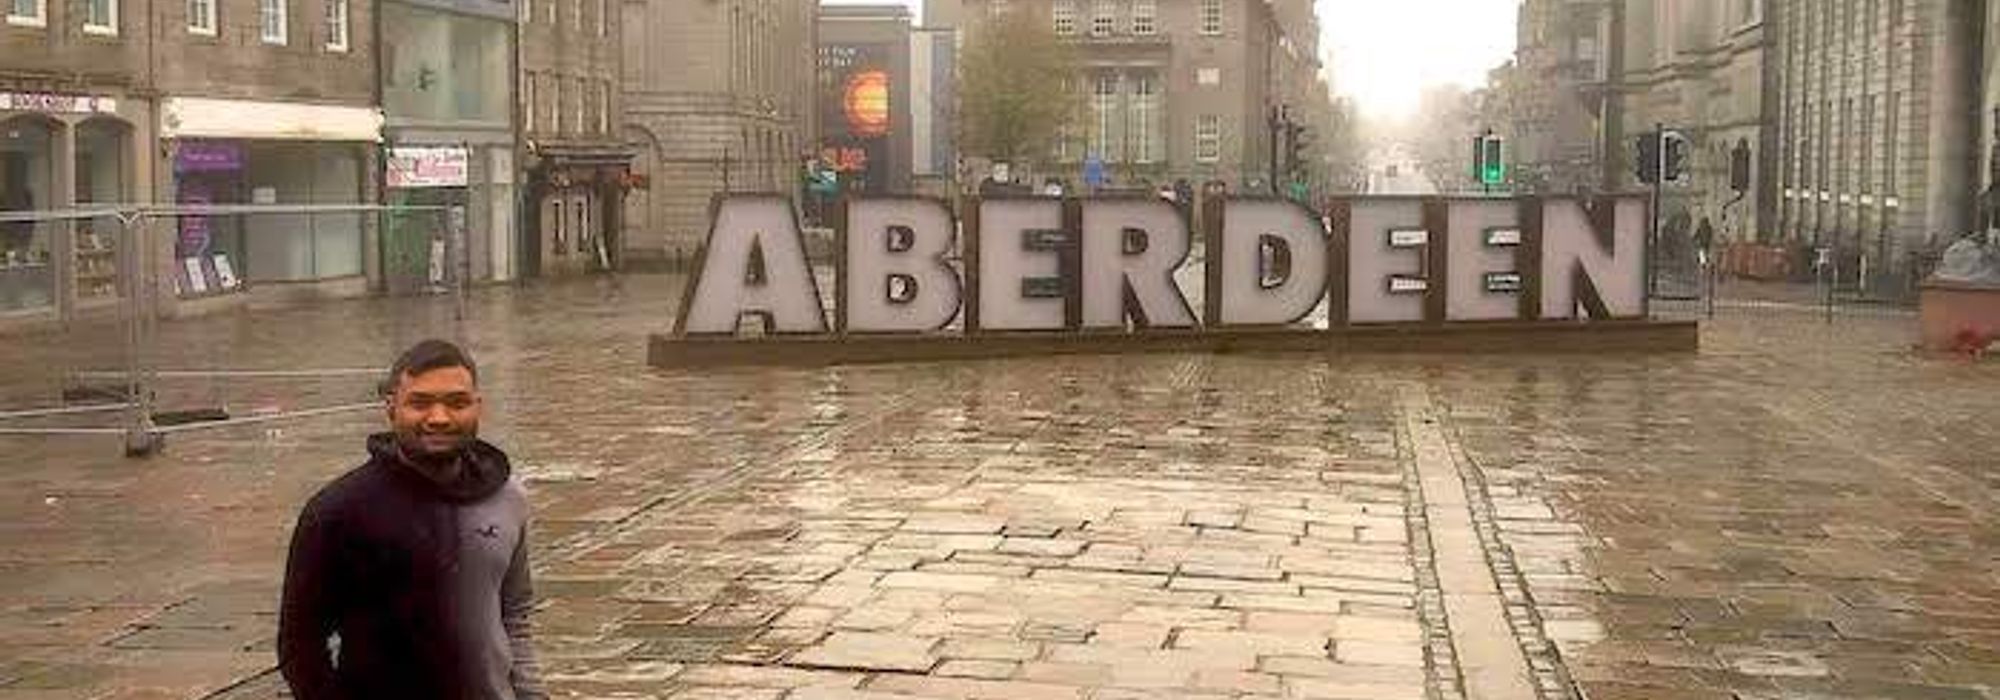 Aberdeen1 Copy 2